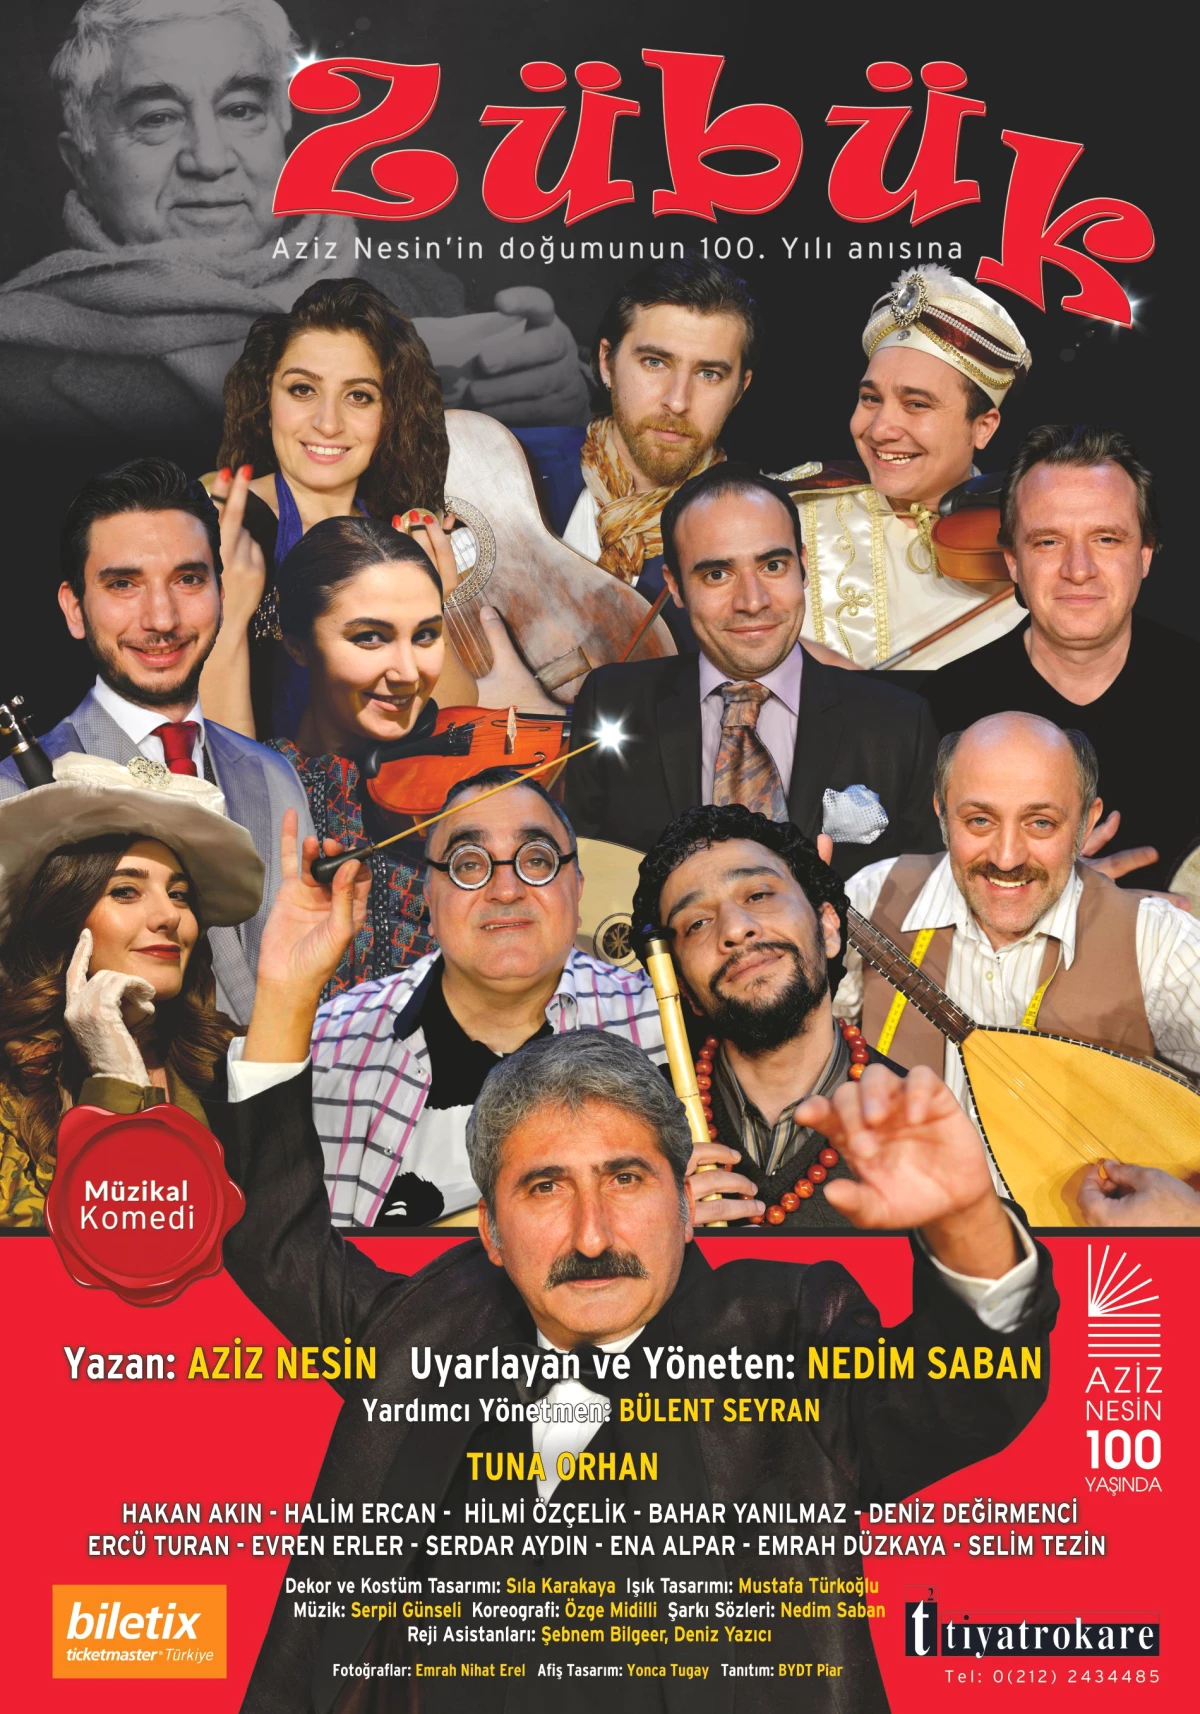 Yeni Zübük Ankara Turnesinde